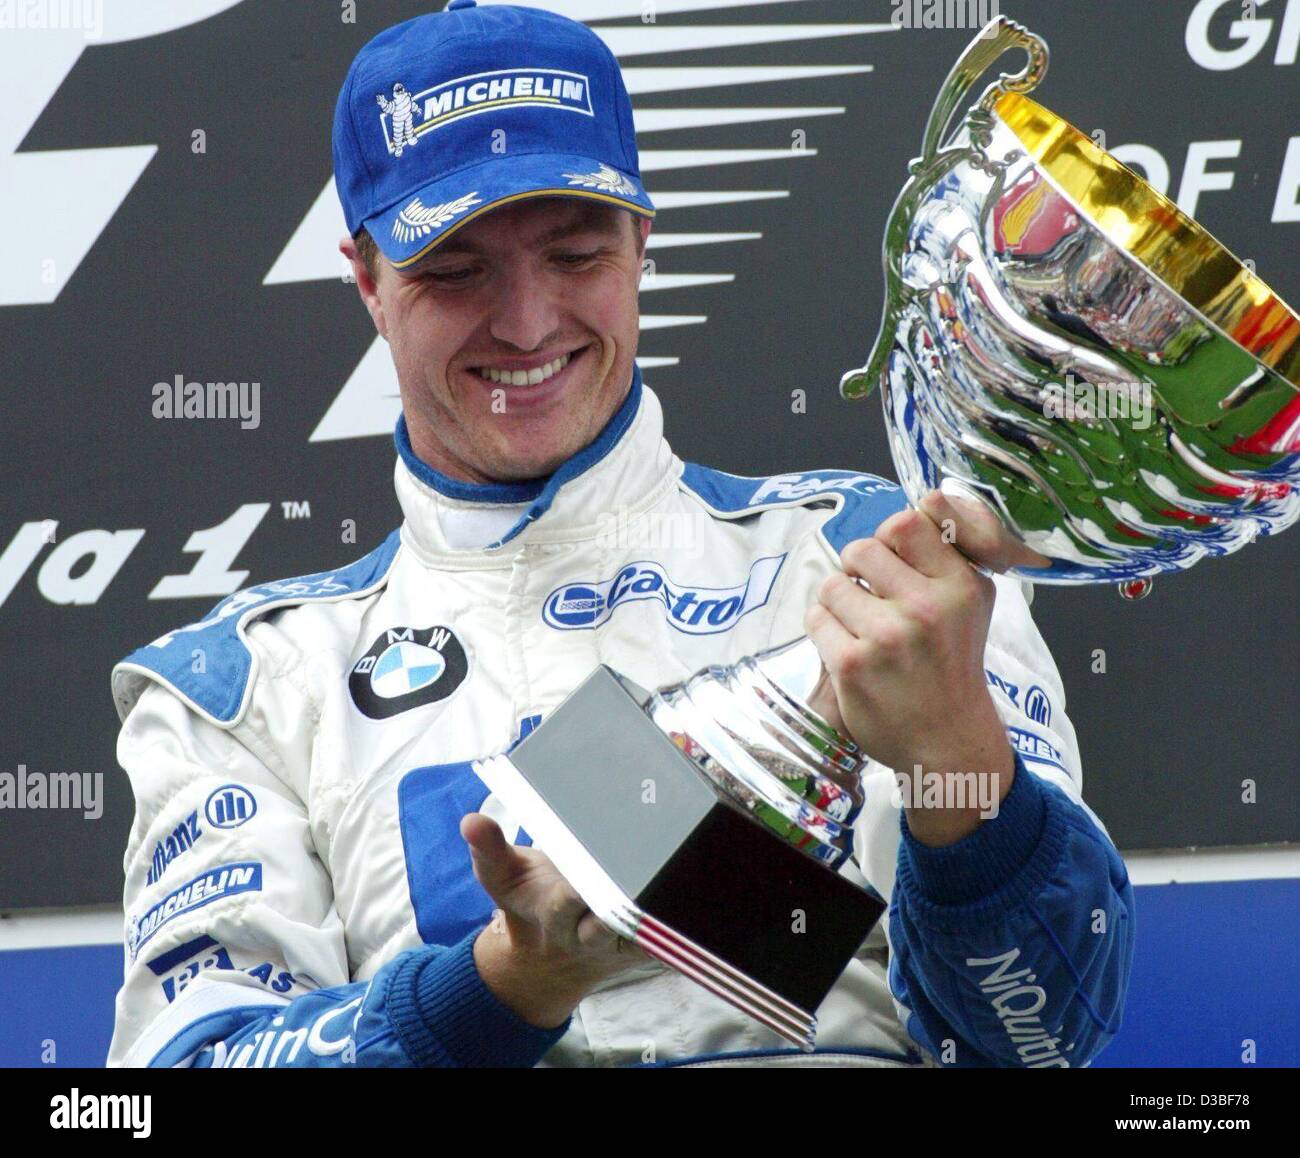 (Dpa) - deutsche Formel 1 pilot Ralf Schumacher (BMW-Williams) glücklich hält seine Trophäe nach dem Gewinn der Europäischen Grand Prix auf dem Nürburgring Rennstrecke, Deutschland, 29. Juni 2003. Mit 43 Punkten in der Gesamtwertung für die WM ist er nun dritte ranking. Stockfoto